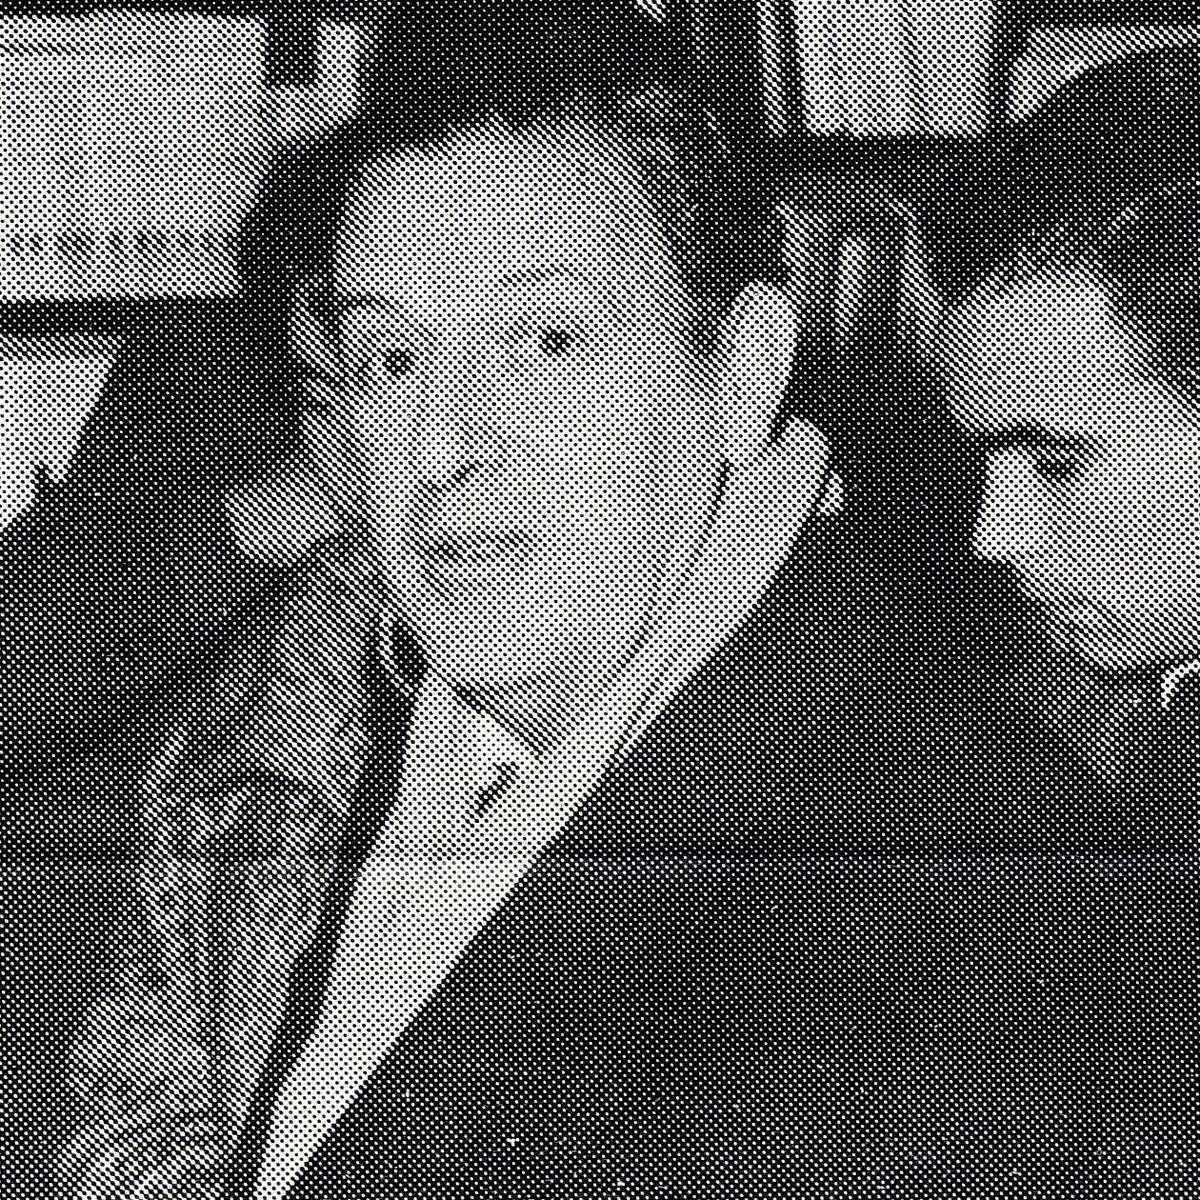 Antonio Ramos de Almeida